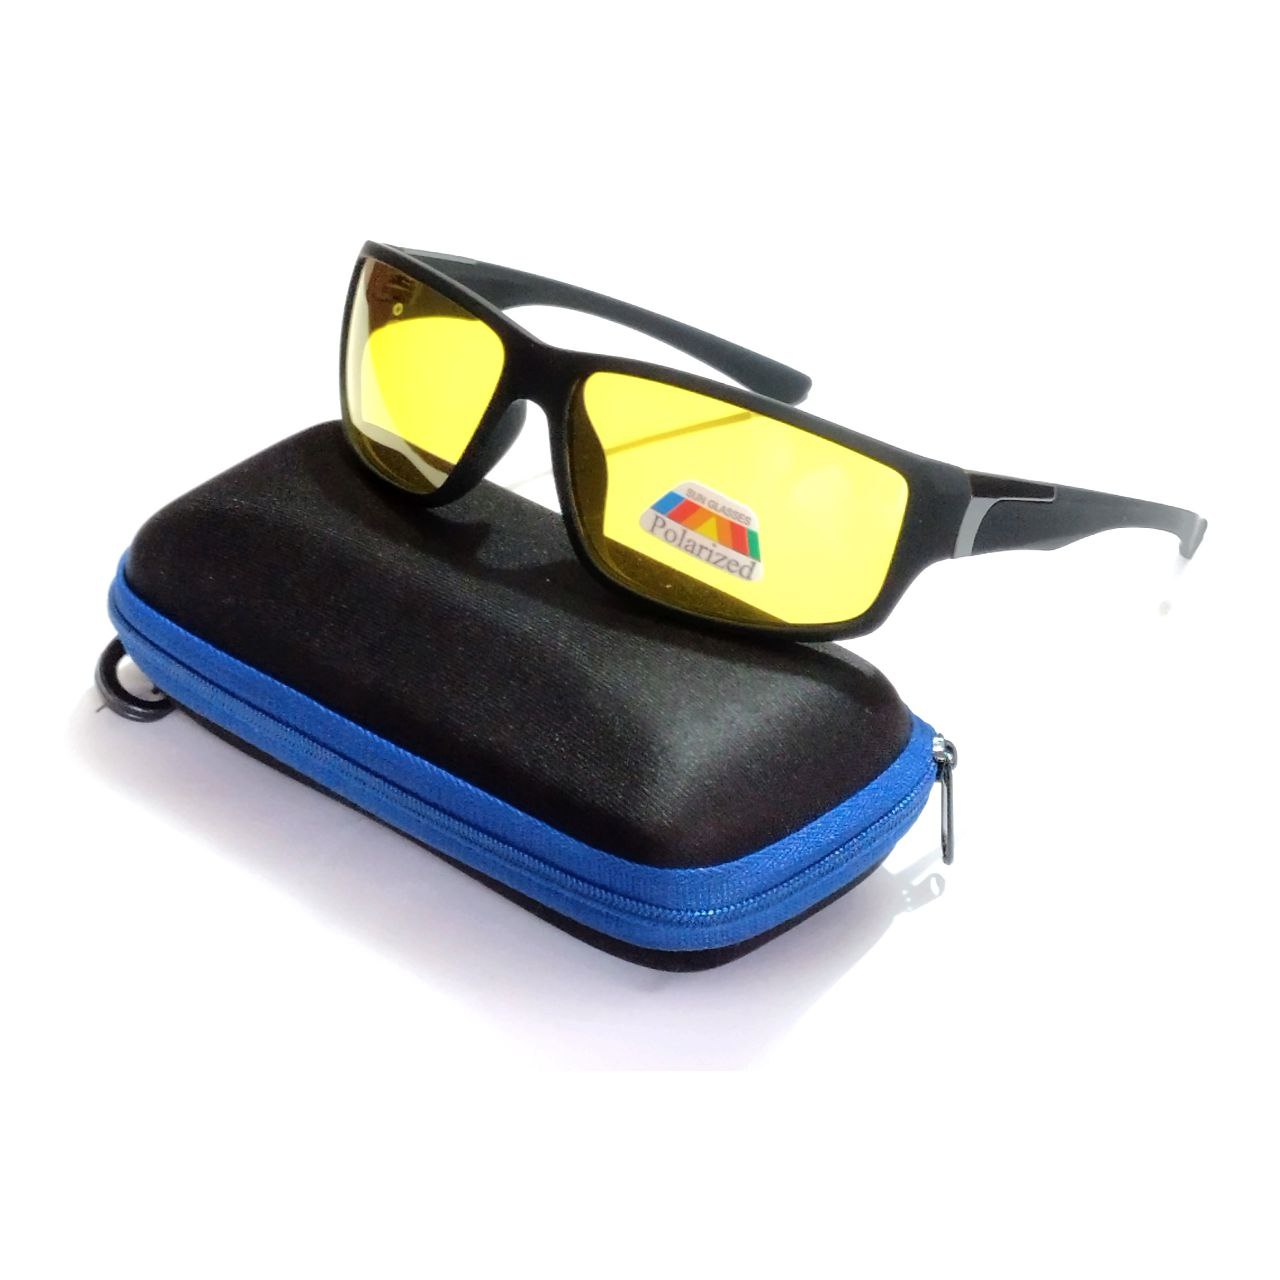 Wraparound Night Vision Glasses - Polarized Yellow Lenses